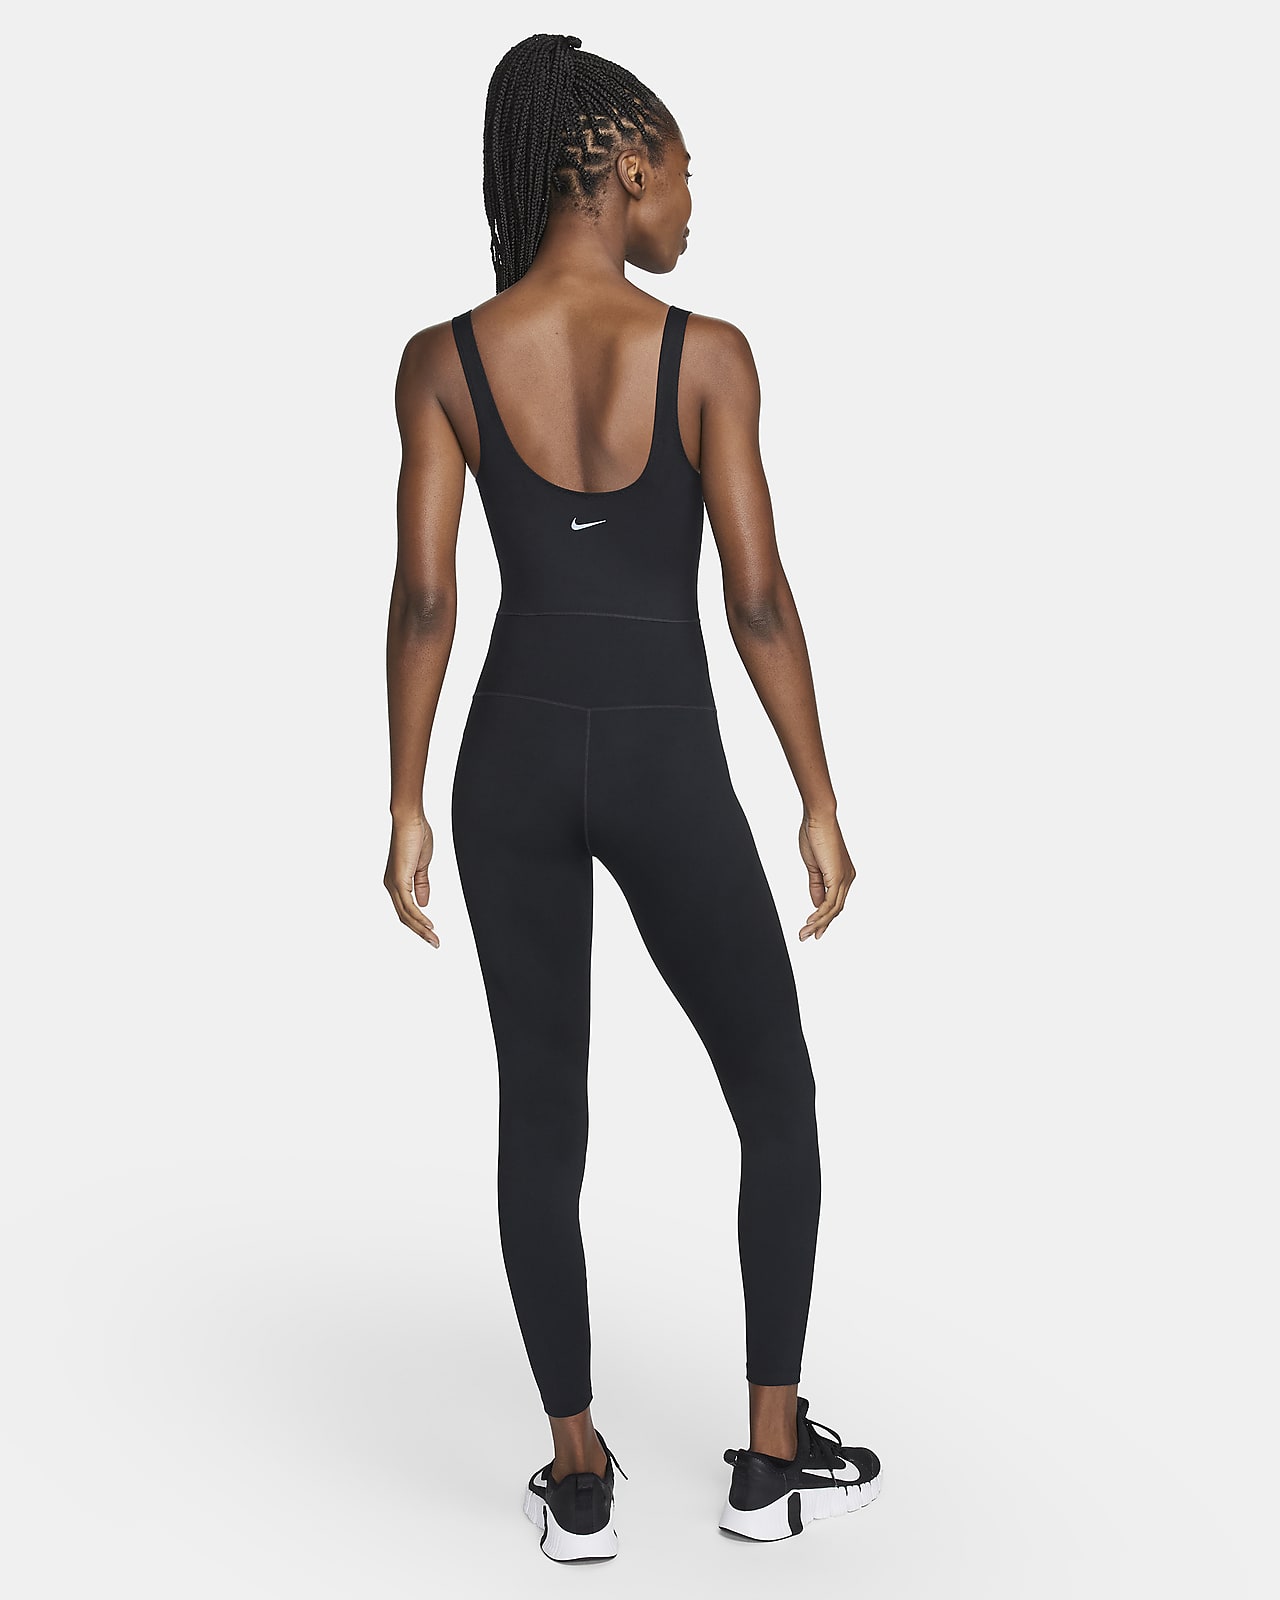 Nike One Women's Dri-FIT Bodysuit.